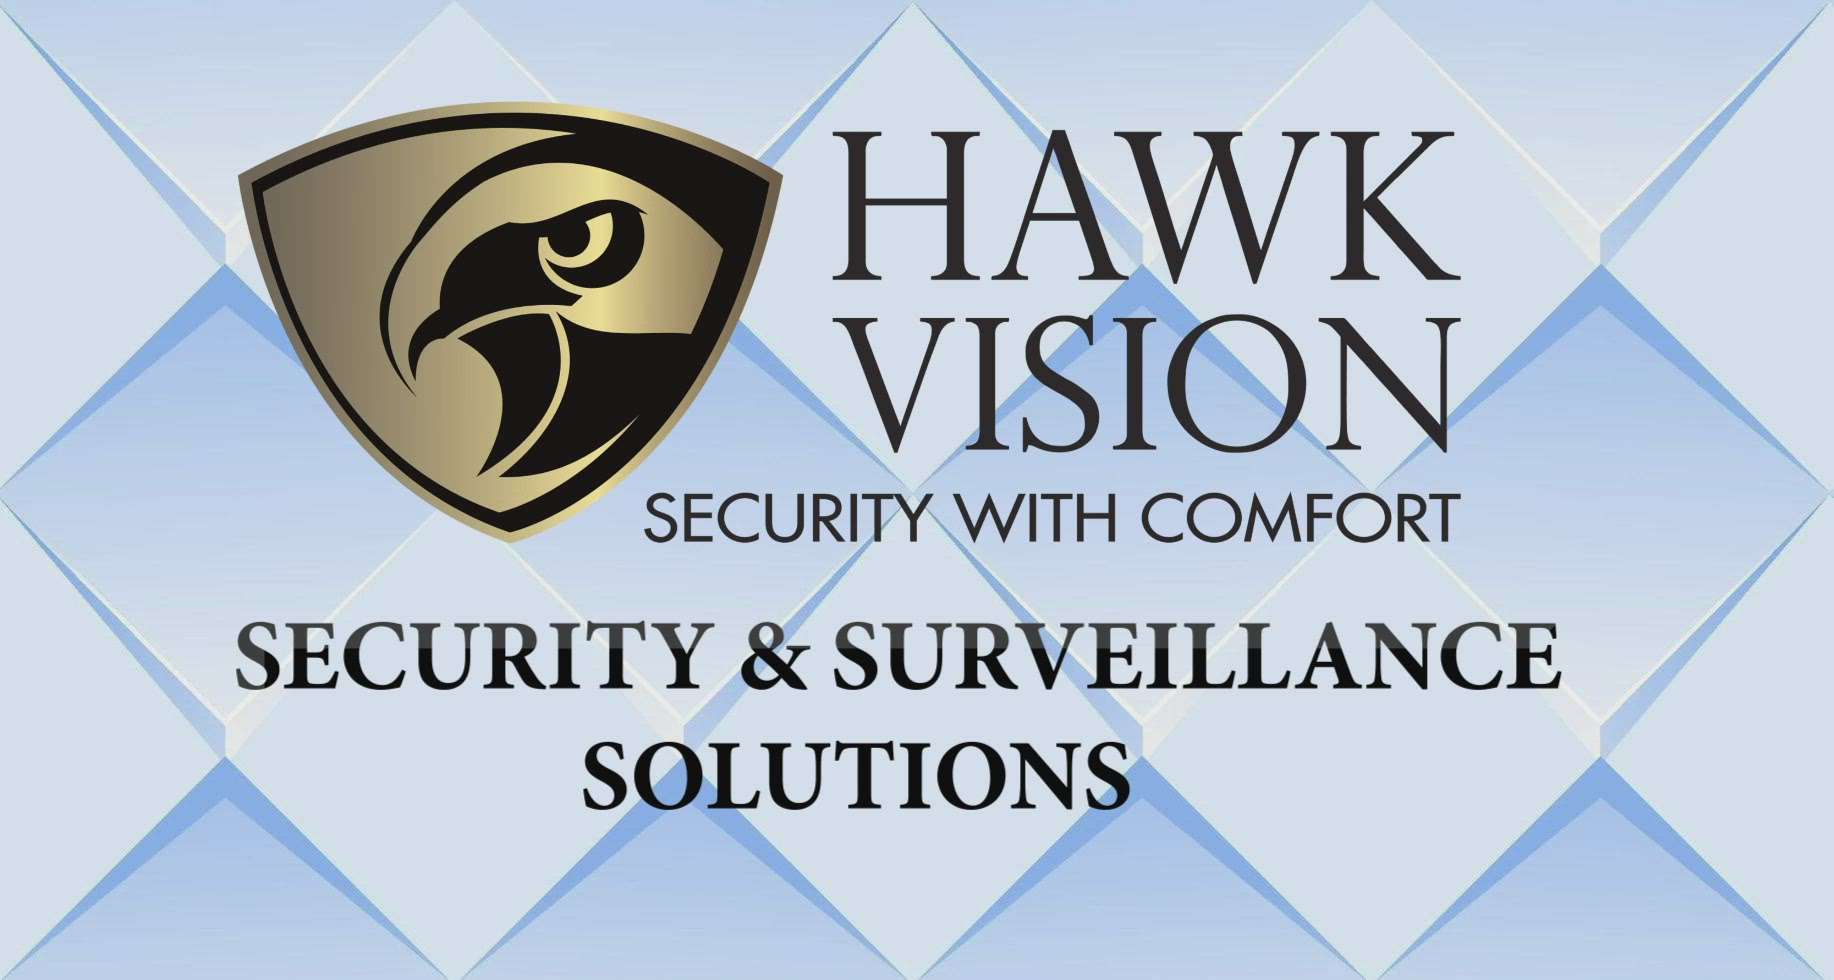 Hawk vision  #smartdoorlock #cctvcamera  #cctv  #vdp #wificamera